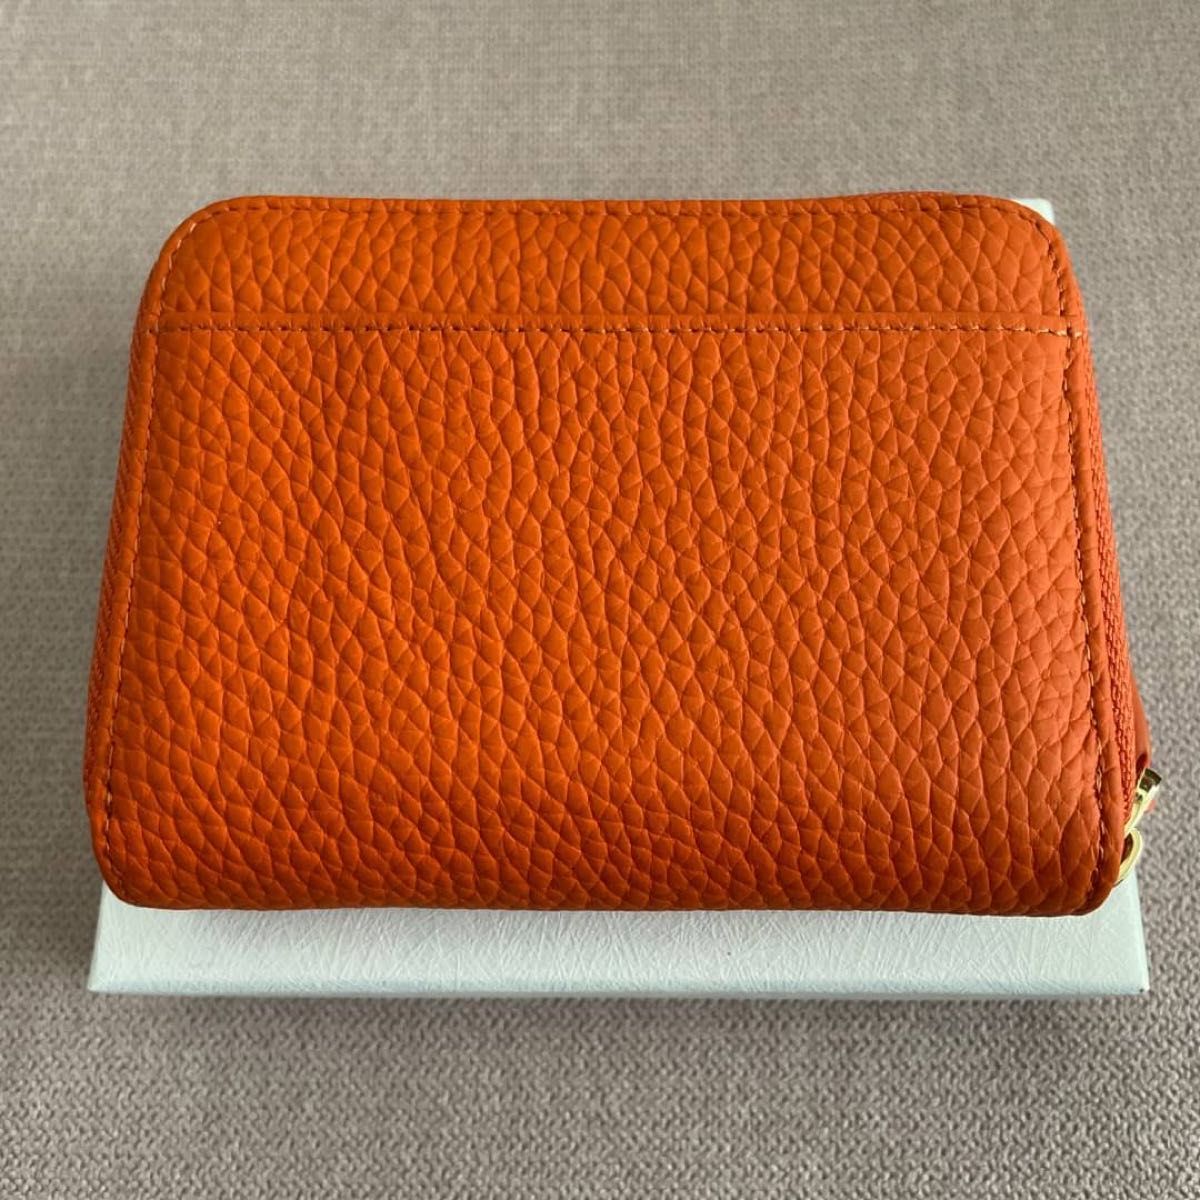 二つ折りミニ財布 レディース 本革 牛革 オレンジ プレゼント 高級 コンパクト スキミング防止 レザー